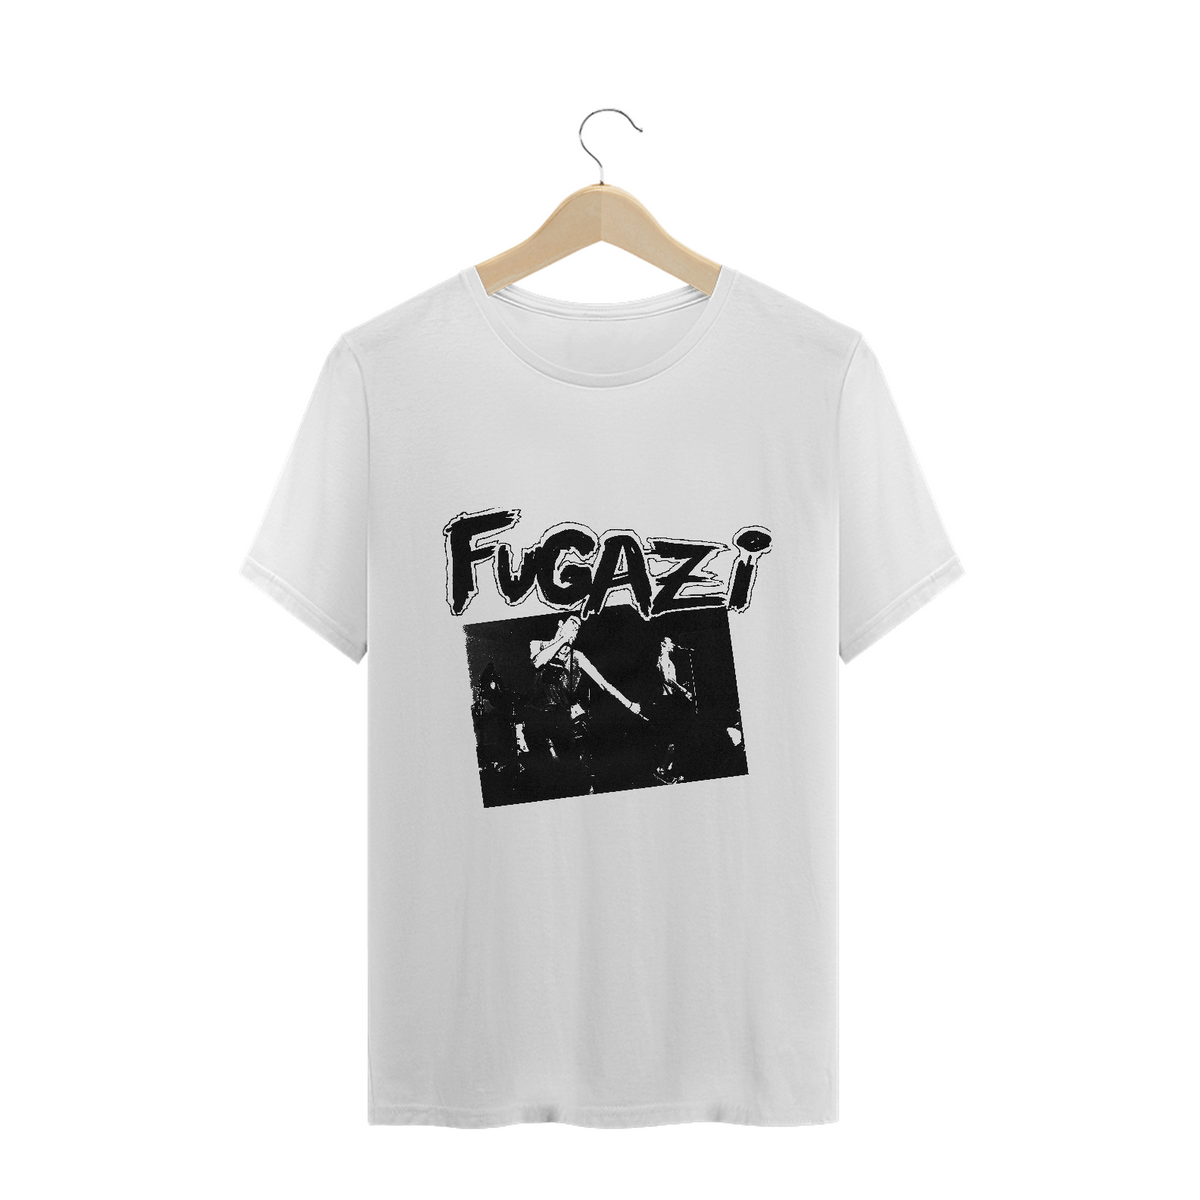 Nome do produto: FUGAZI